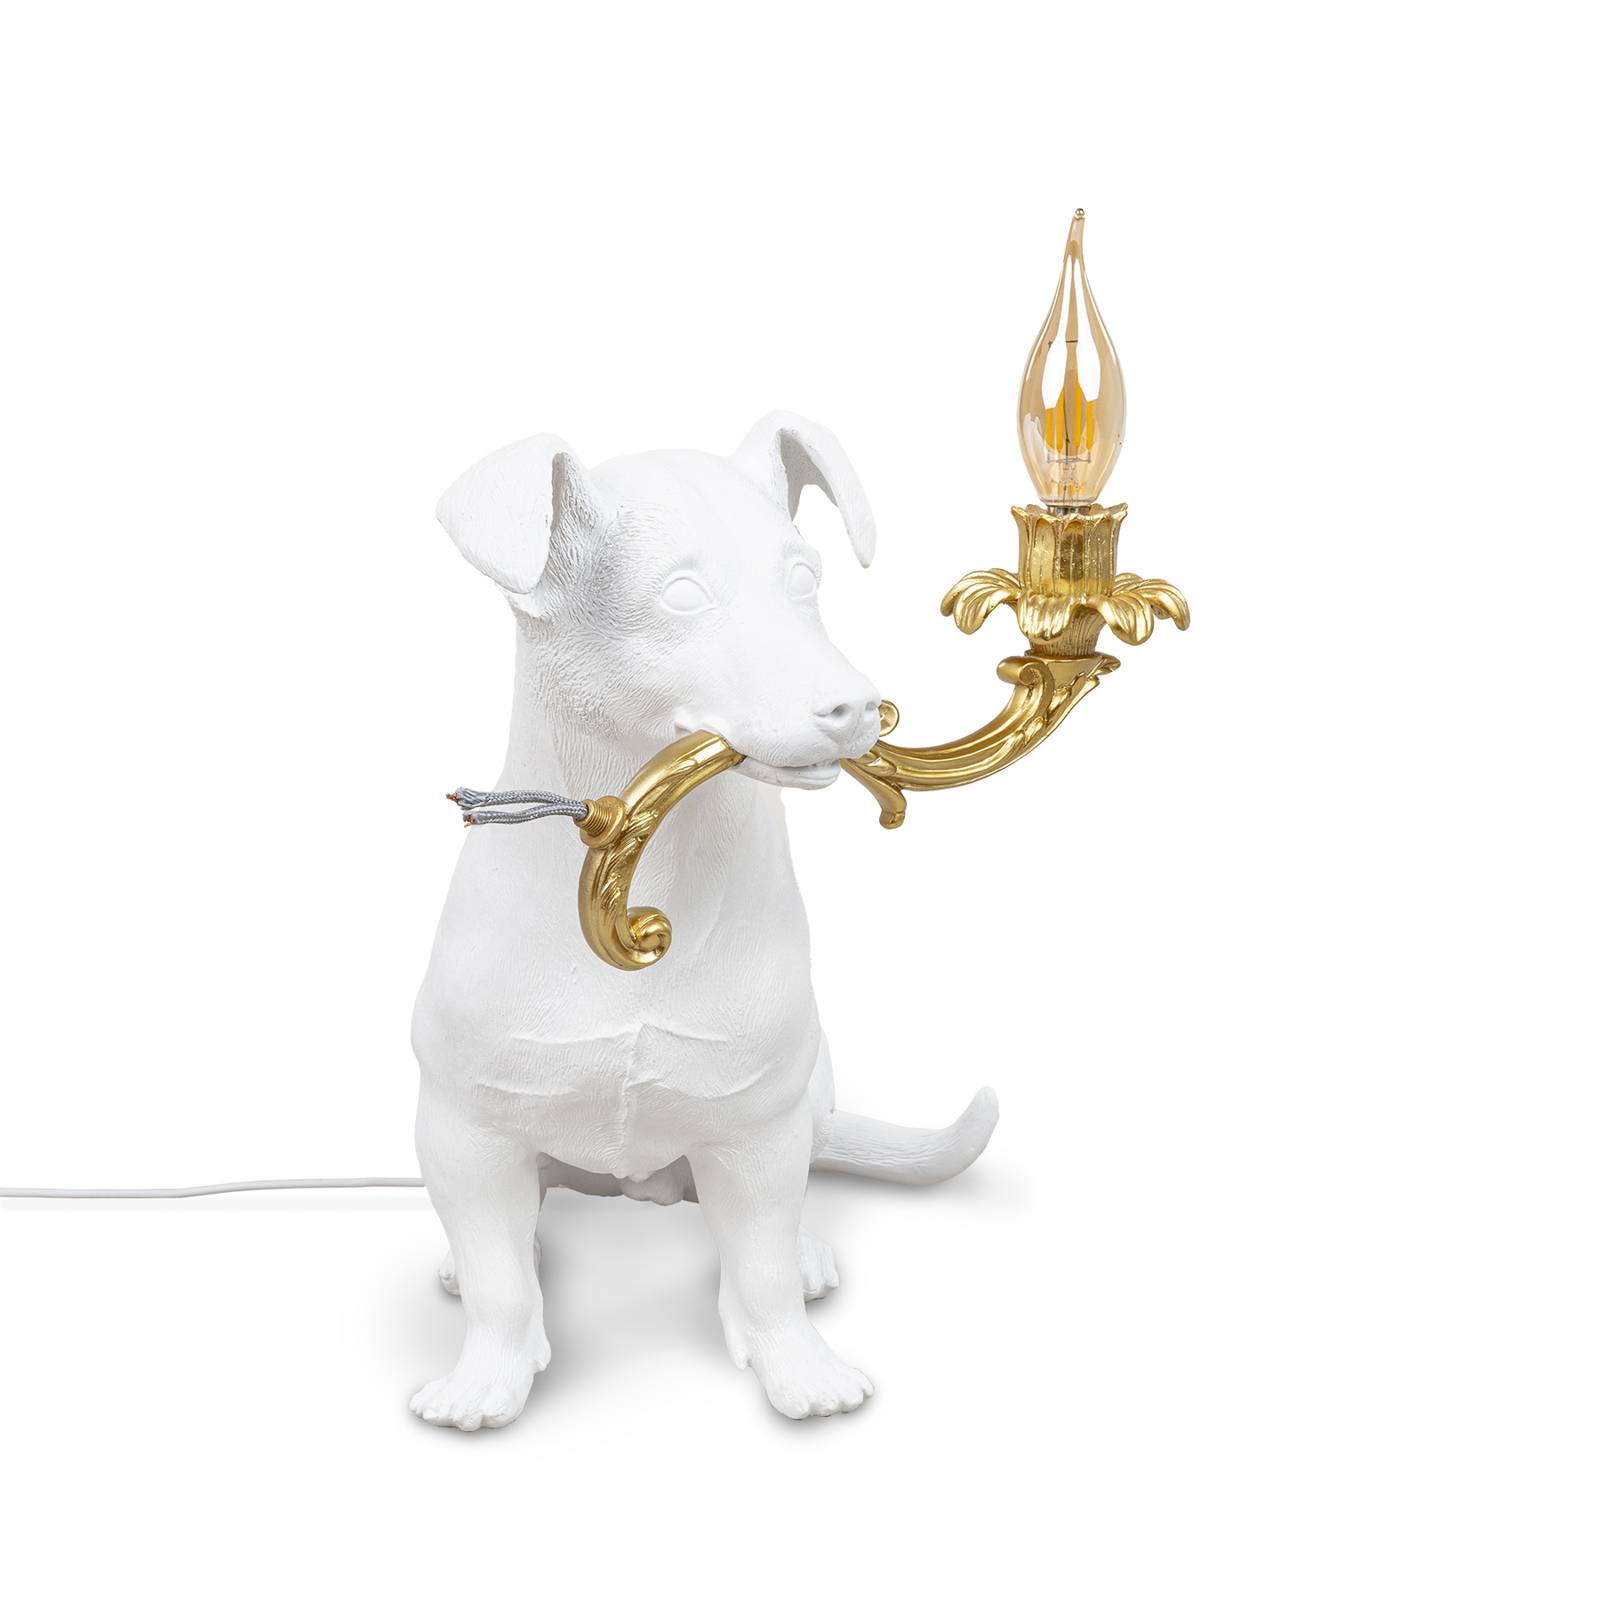 SELETTI LED deko stolní lampa Rio, pes v bílé barvě